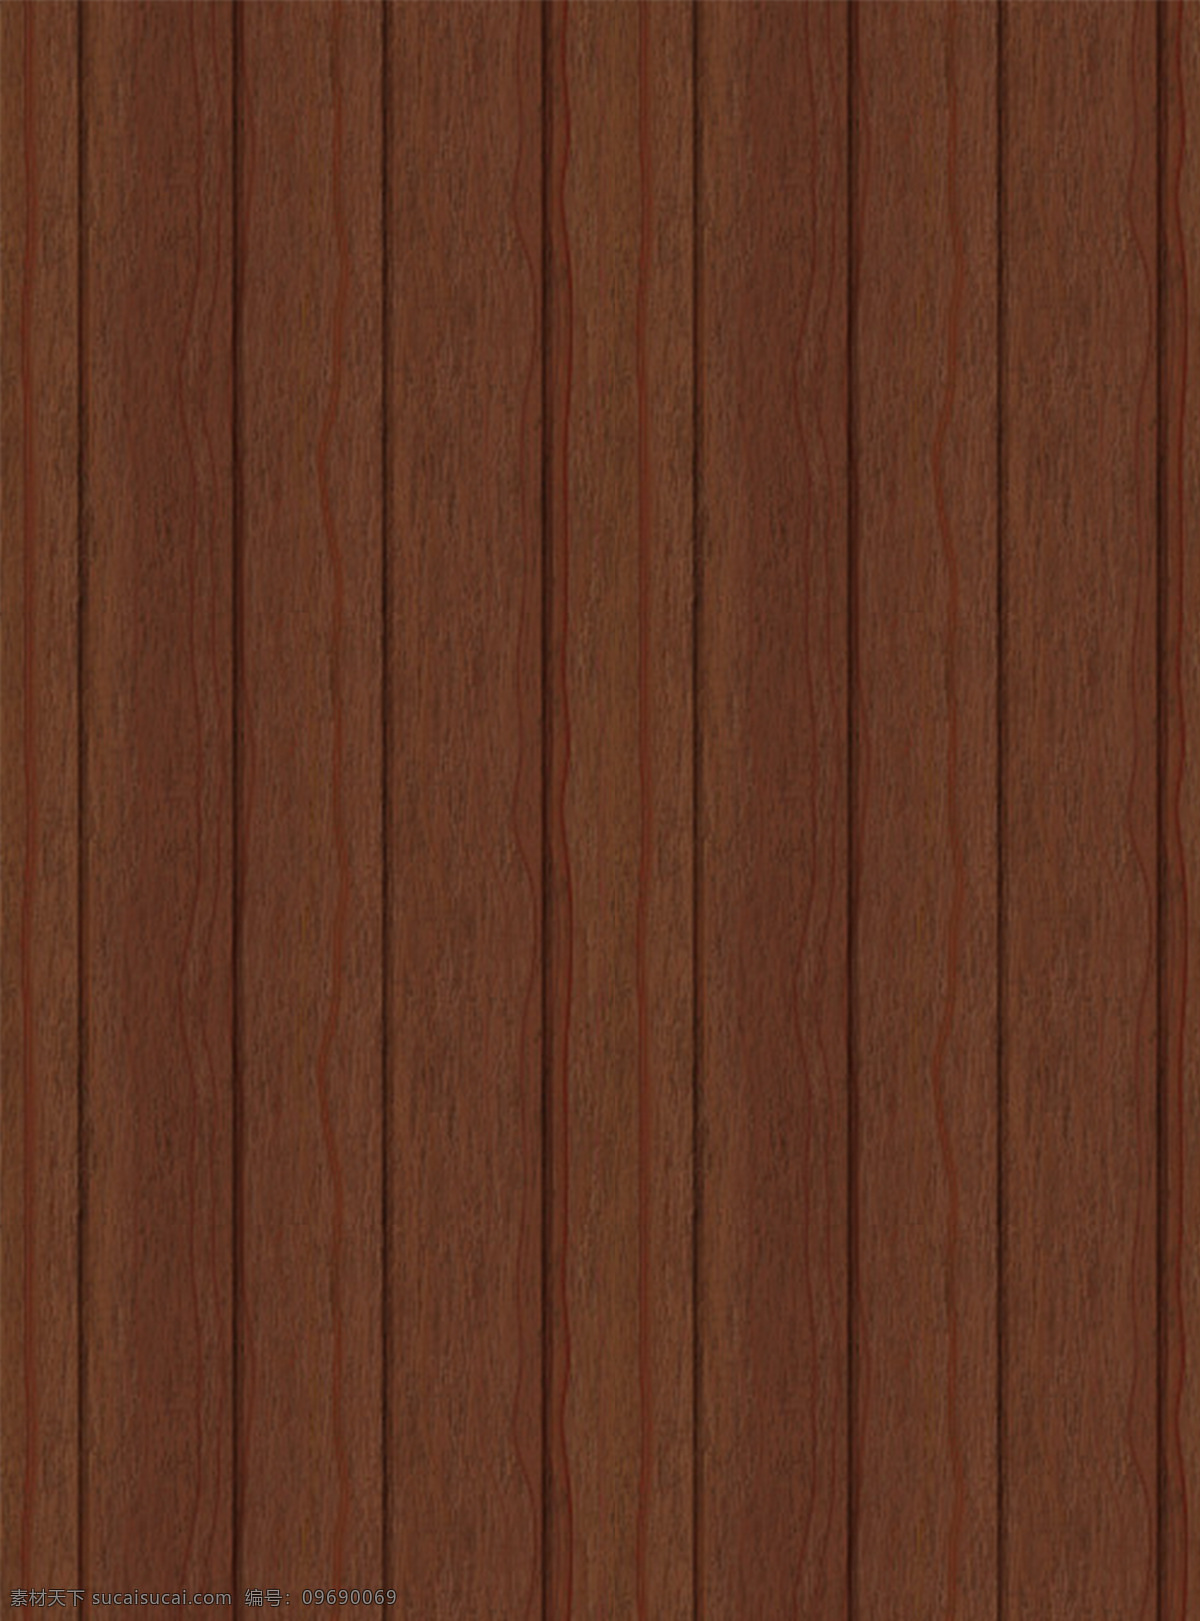 棕红色 木板 背景 棕色 红木 排列 花纹 纹路 自然 木质 木头 木纹 纹理 肌理 底纹 插图 简约 朴素 质朴 黄色 高清 木 木地板 设计元素素材 设计背景素材 底纹边框 背景底纹